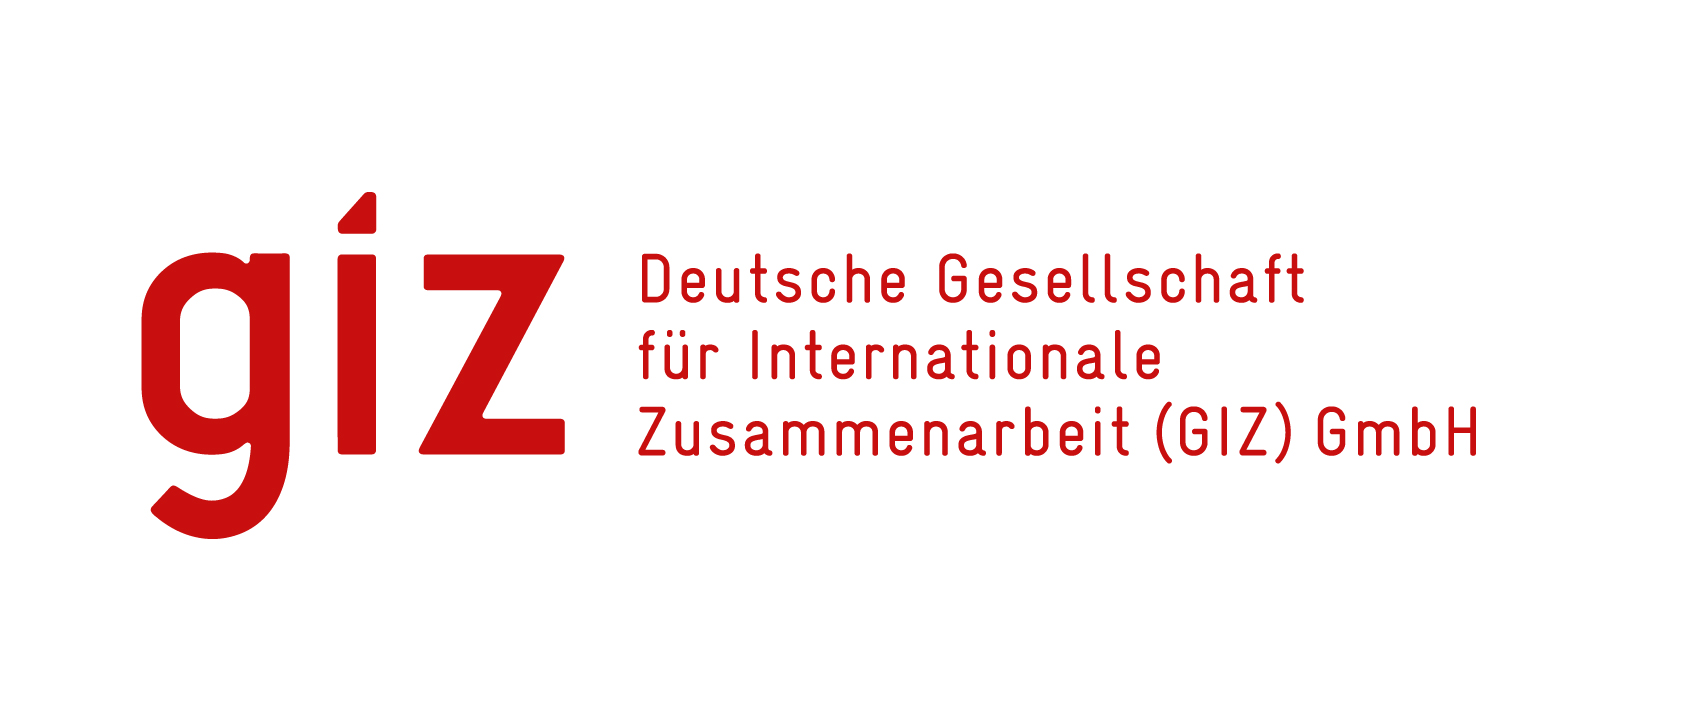 Deutsche Gesellschaft für Internationale Zusammenarbeit (GIZ) Logo